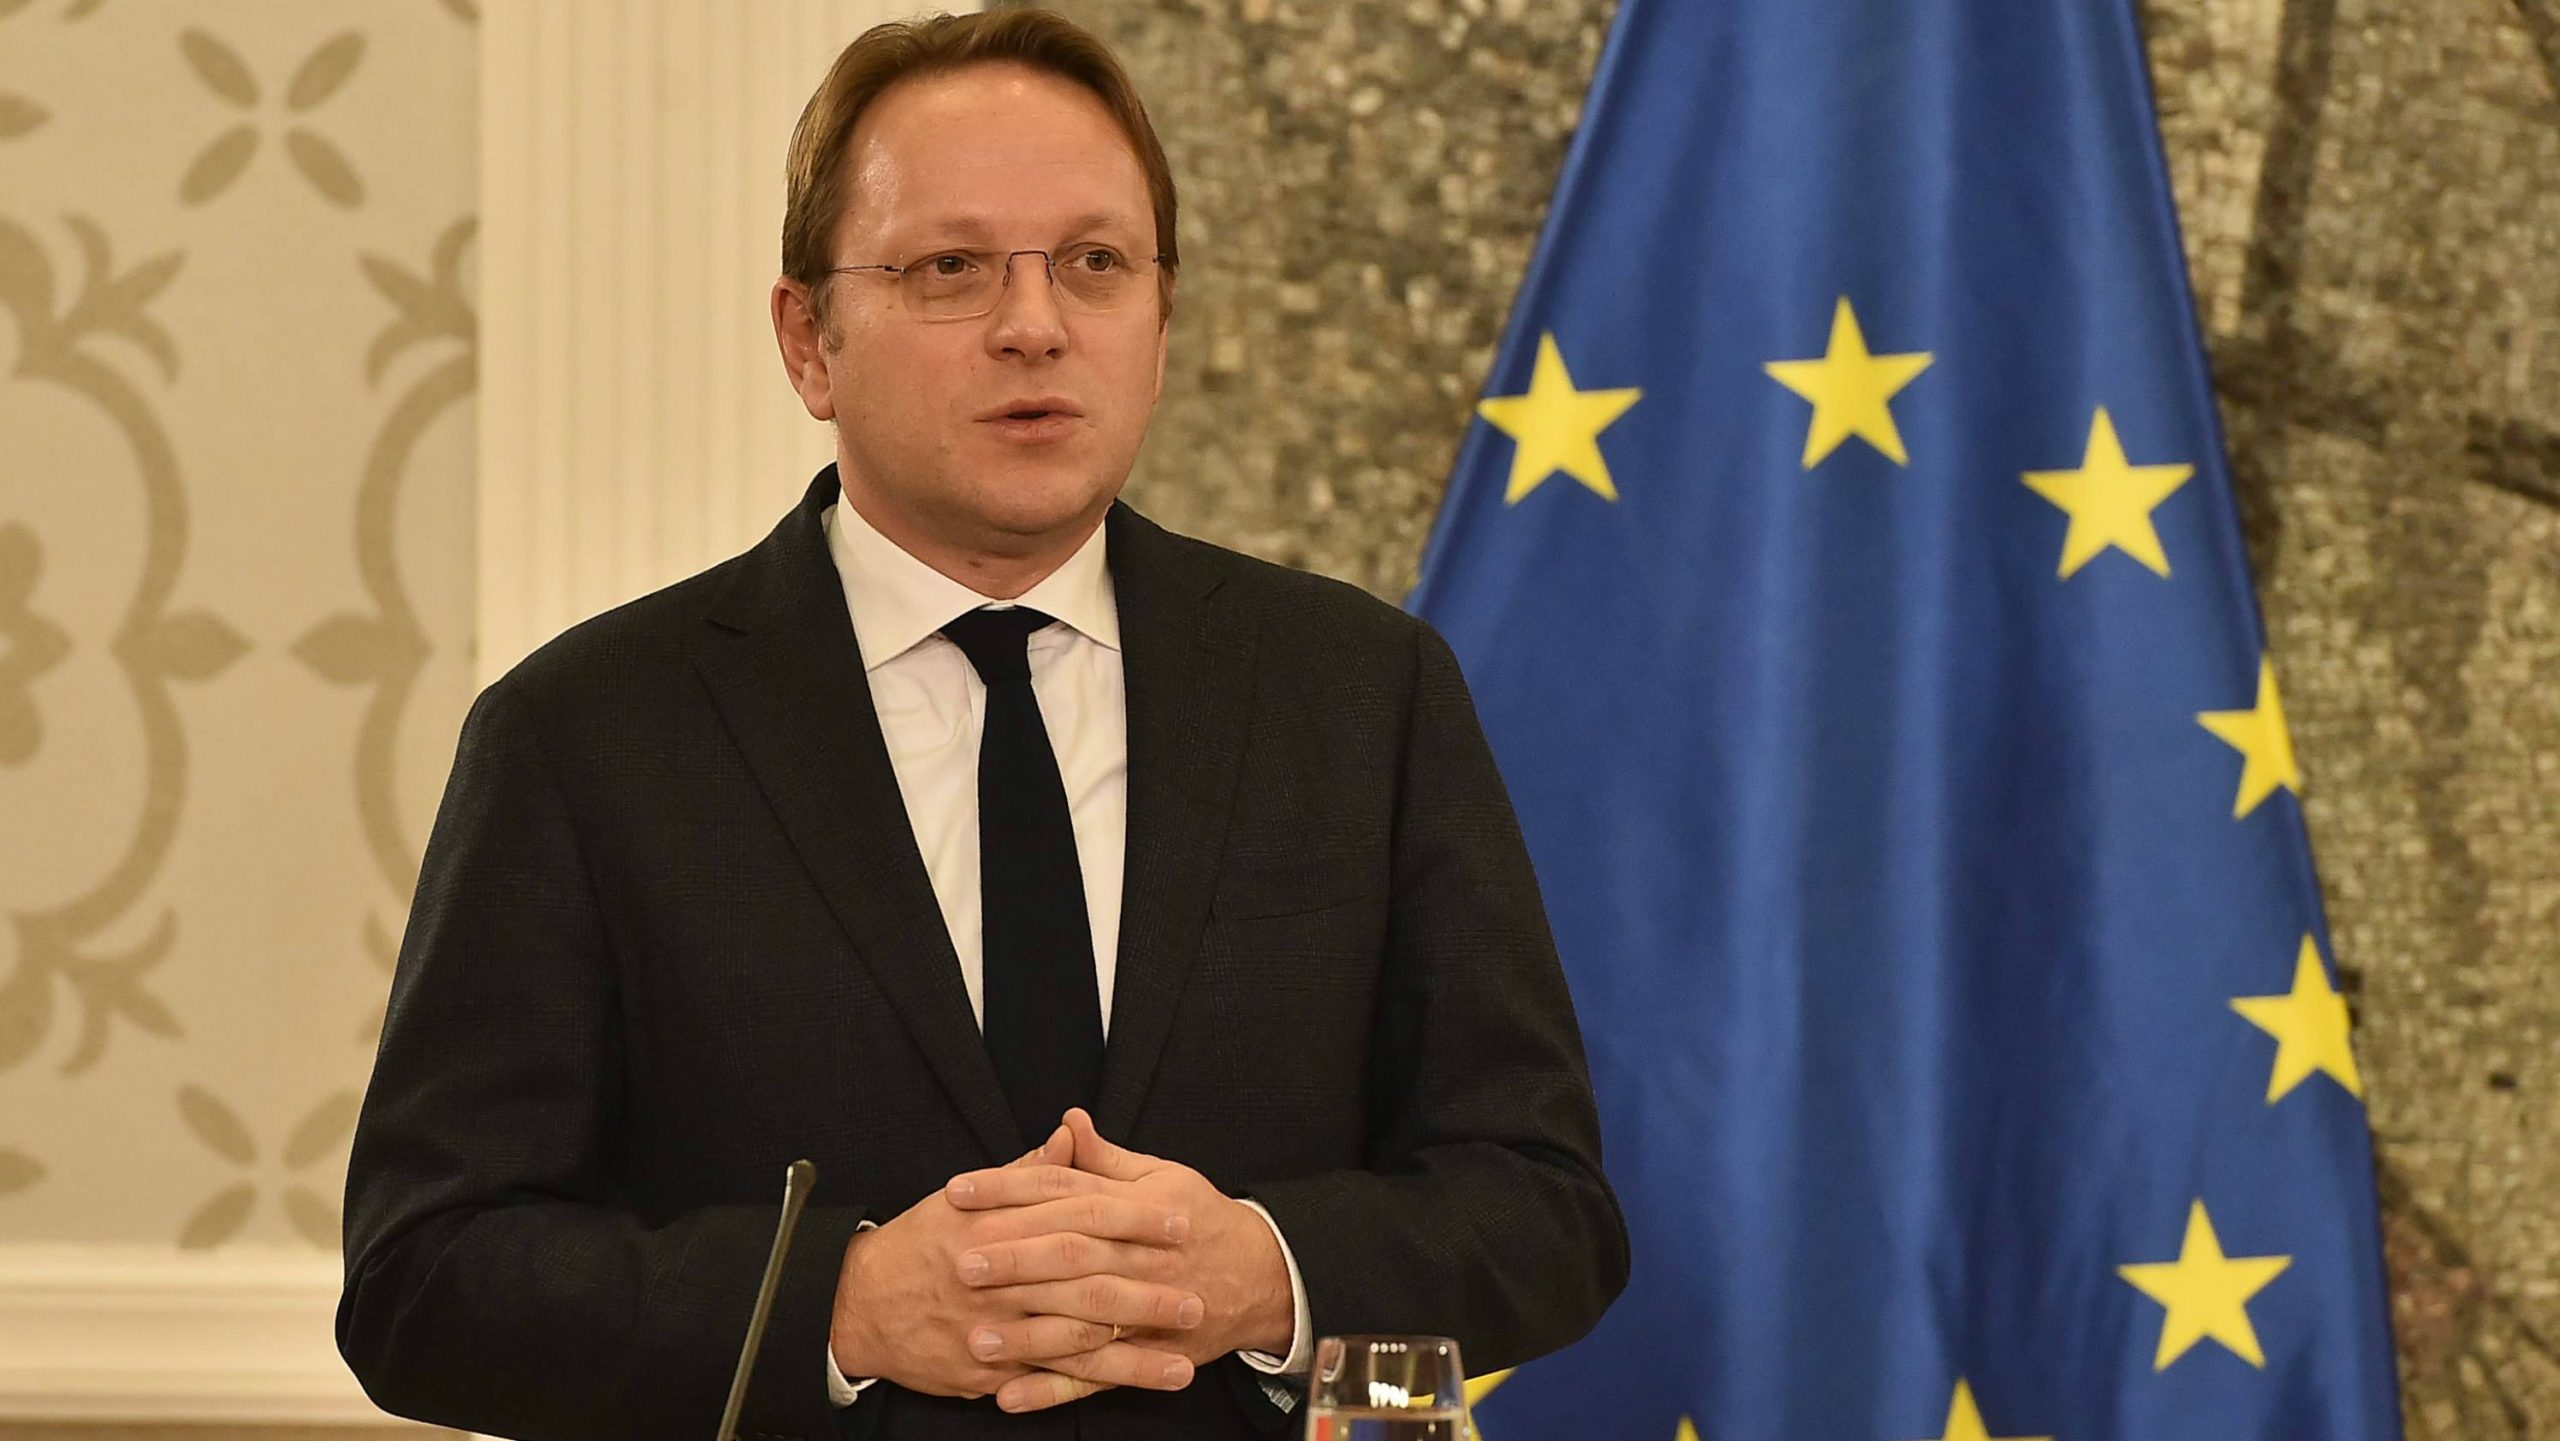 Varheji: Izveštaj ODIHR o izborima osnova za ocenu Evropske komisije о Srbiji 1